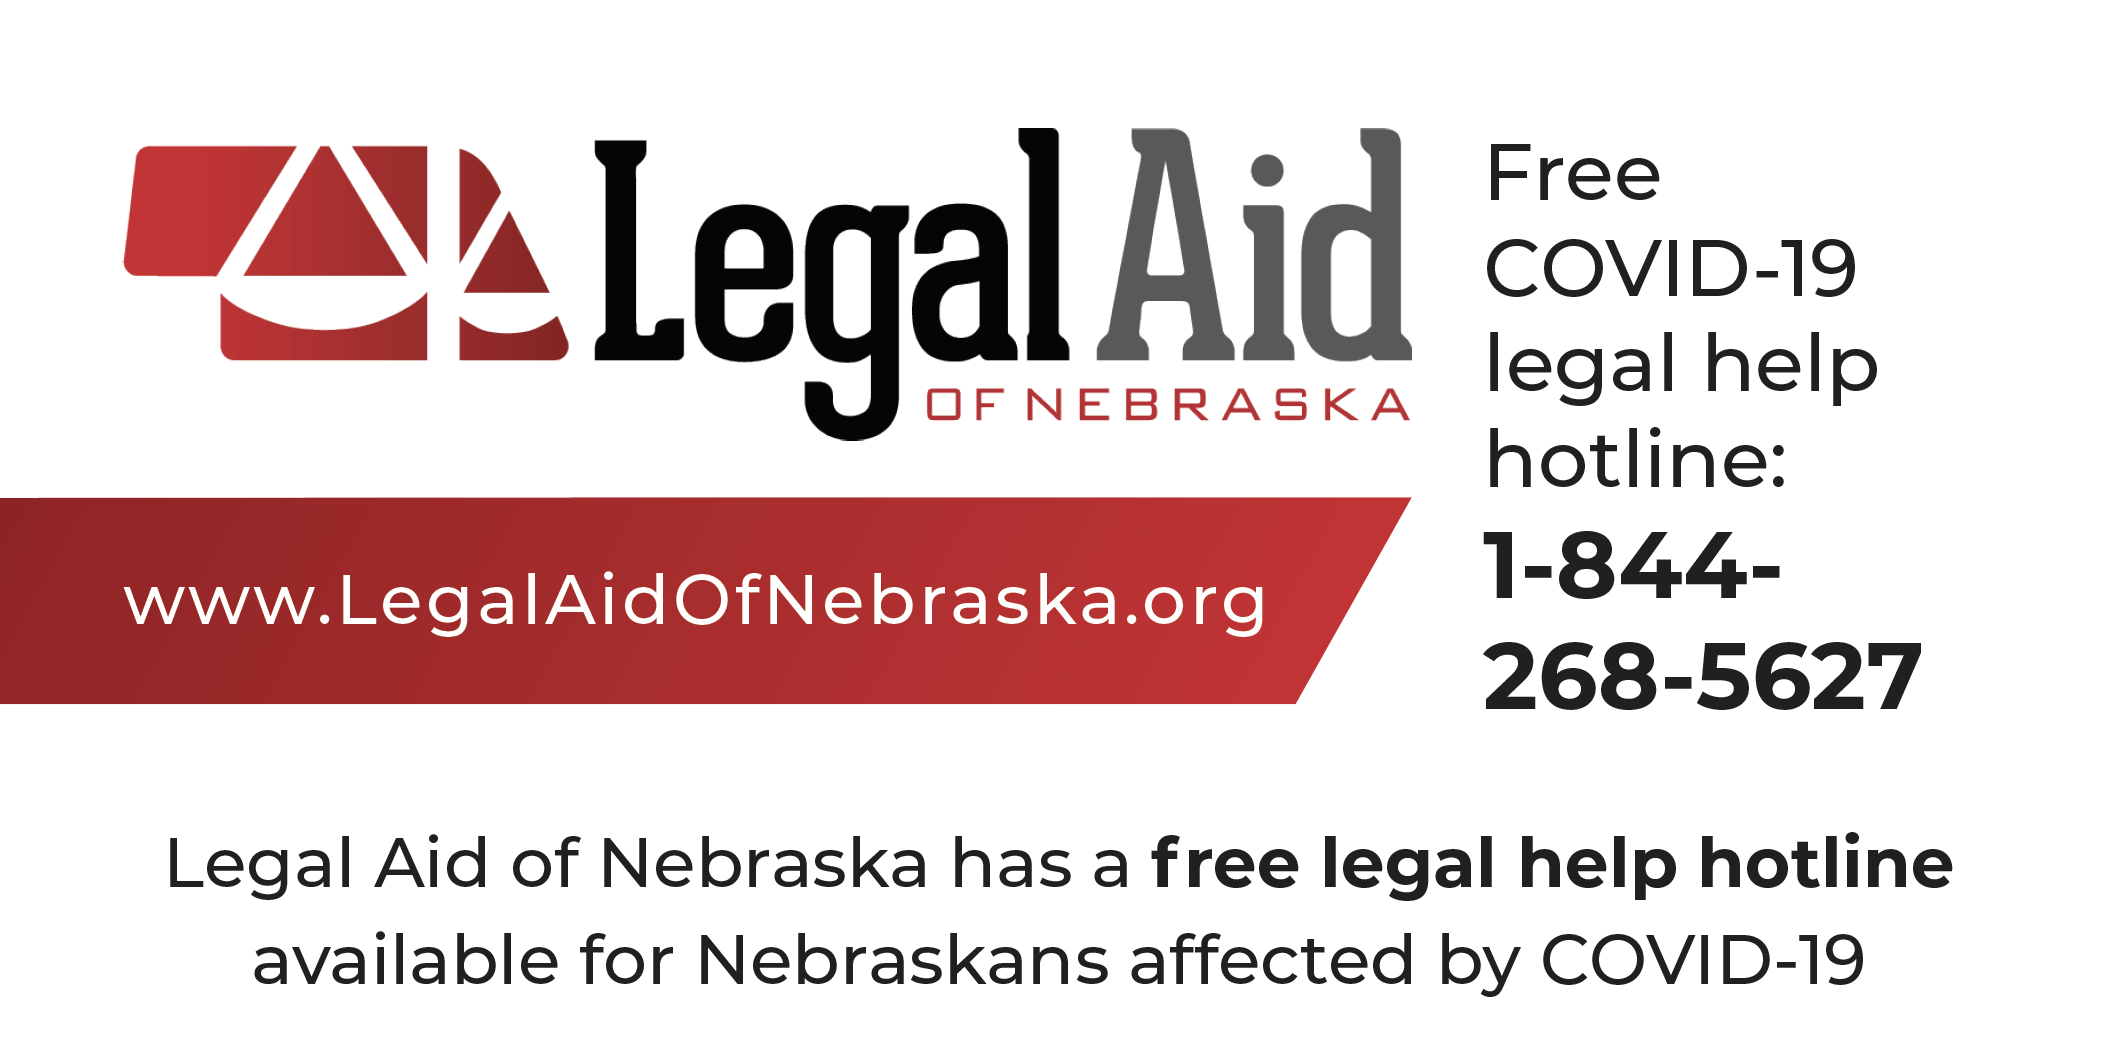 Legal Aid logo